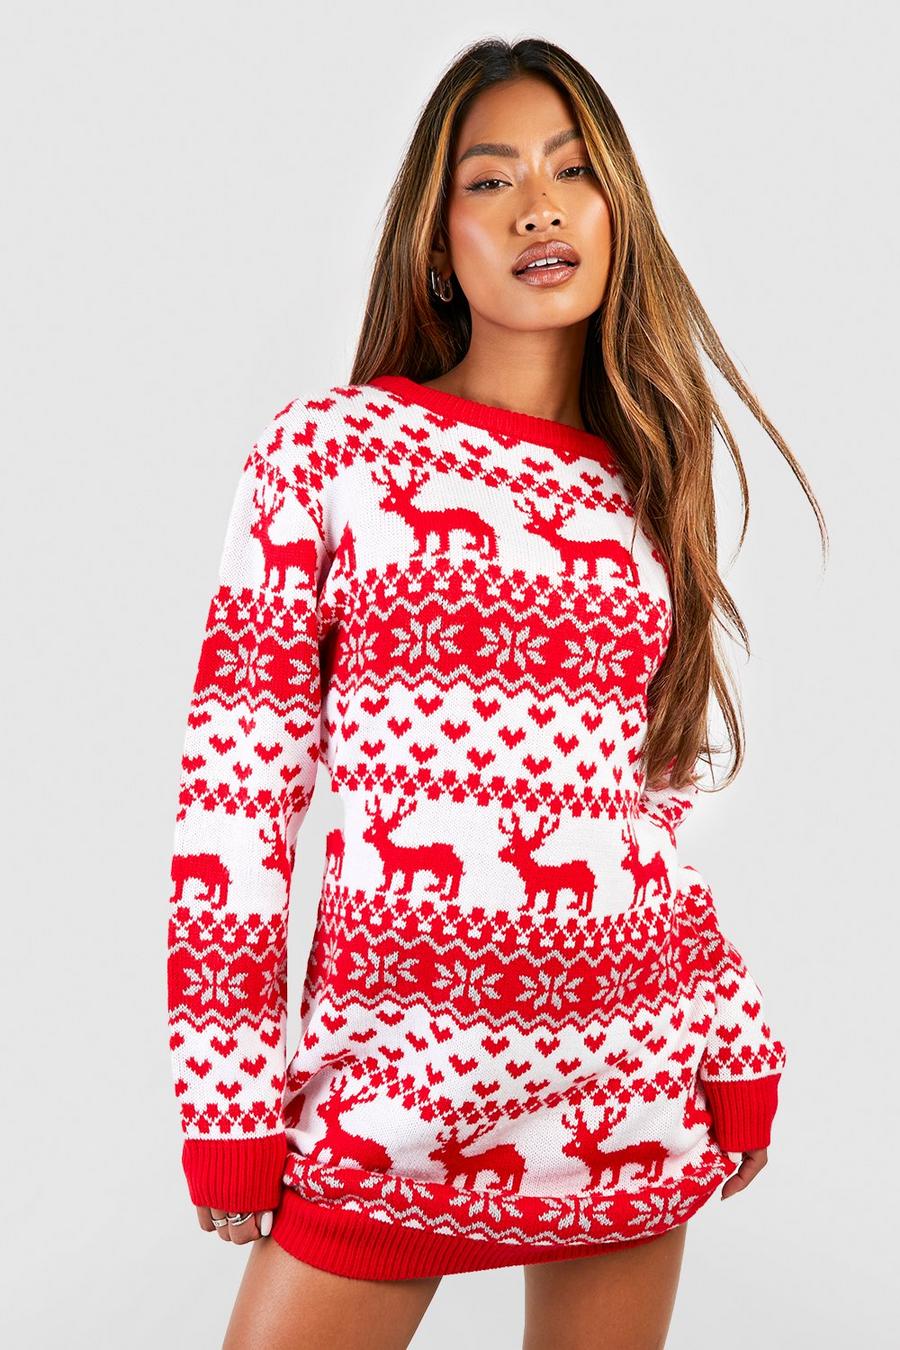 Vestito natalizio in maglia con motivi Fairisle, cuori e renne, Red